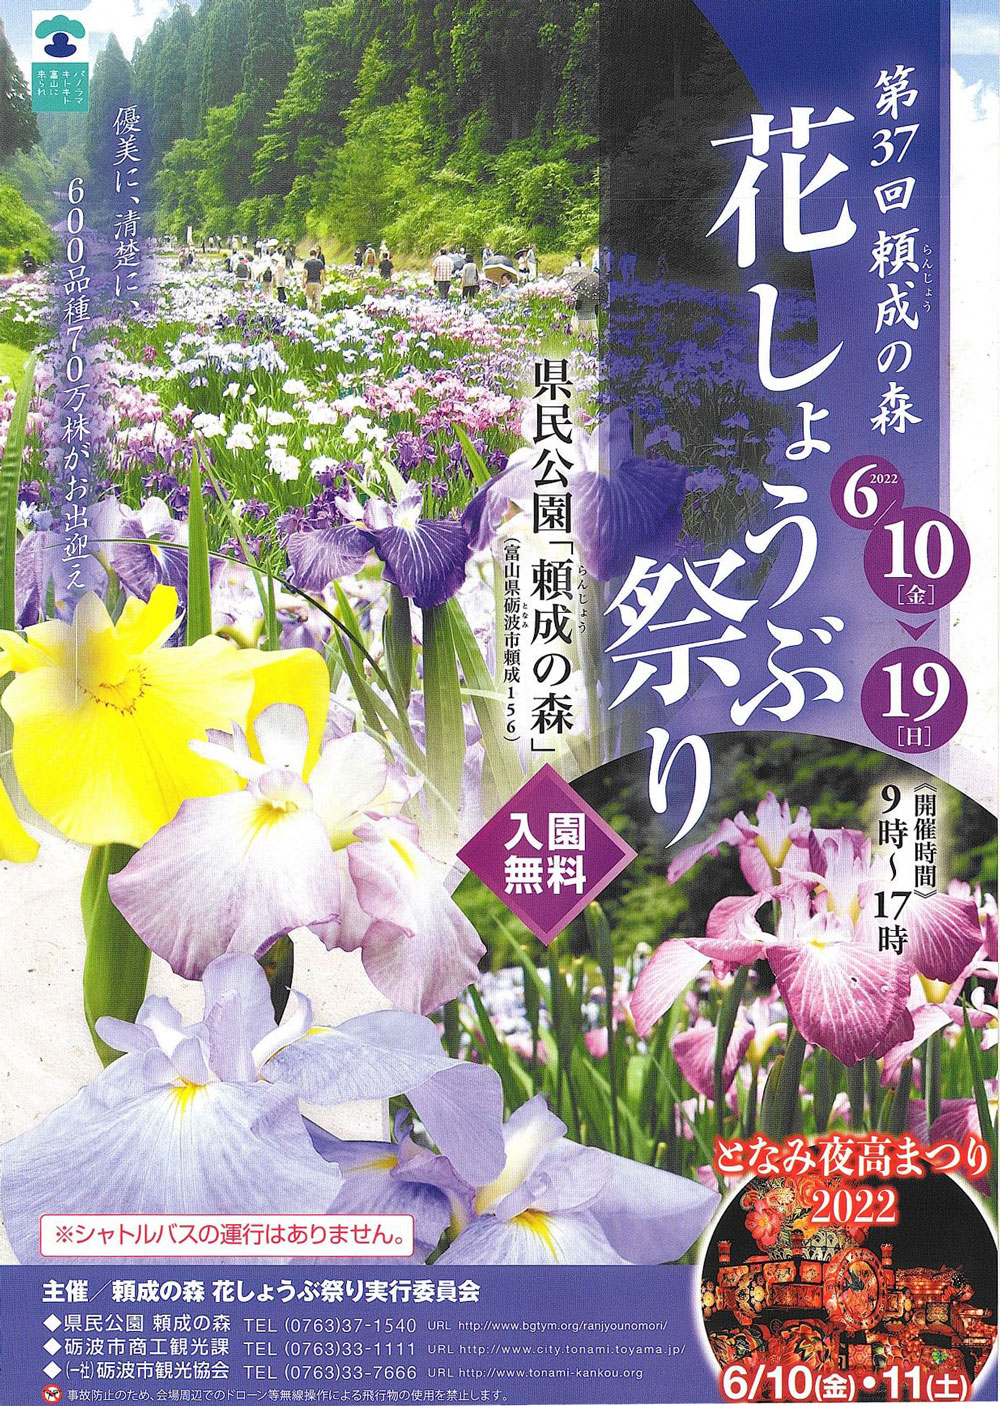 富山県砺波市の「頼成の森 花しょうぶ祭り2022」のチラシ